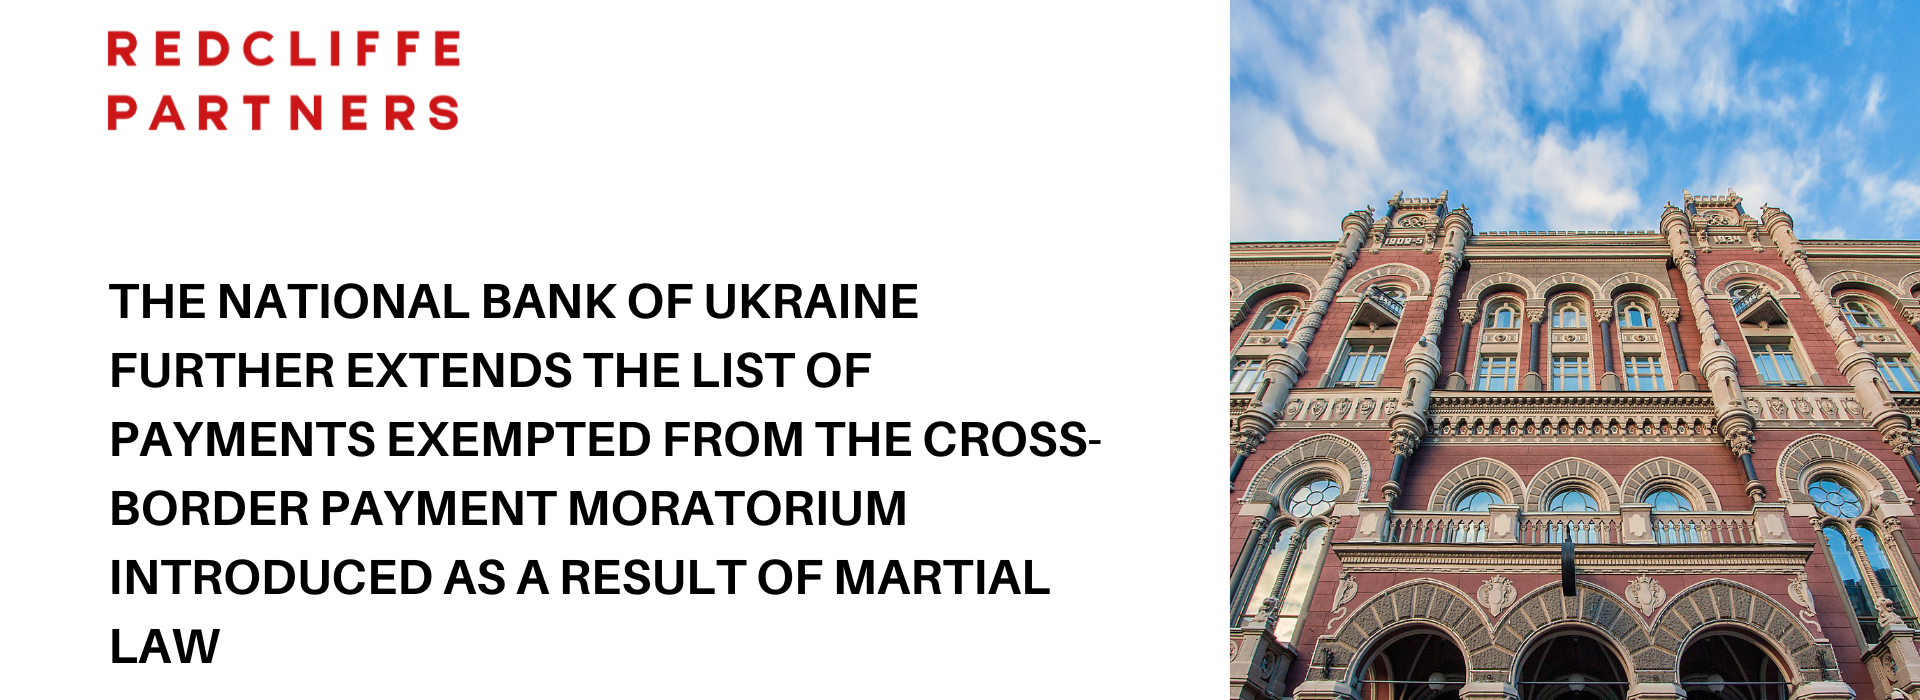 Національний банк України розширює перелік платежів, на які не поширюється дія мораторію на транскордонні платежі, запровадженого внаслідок воєнного стану